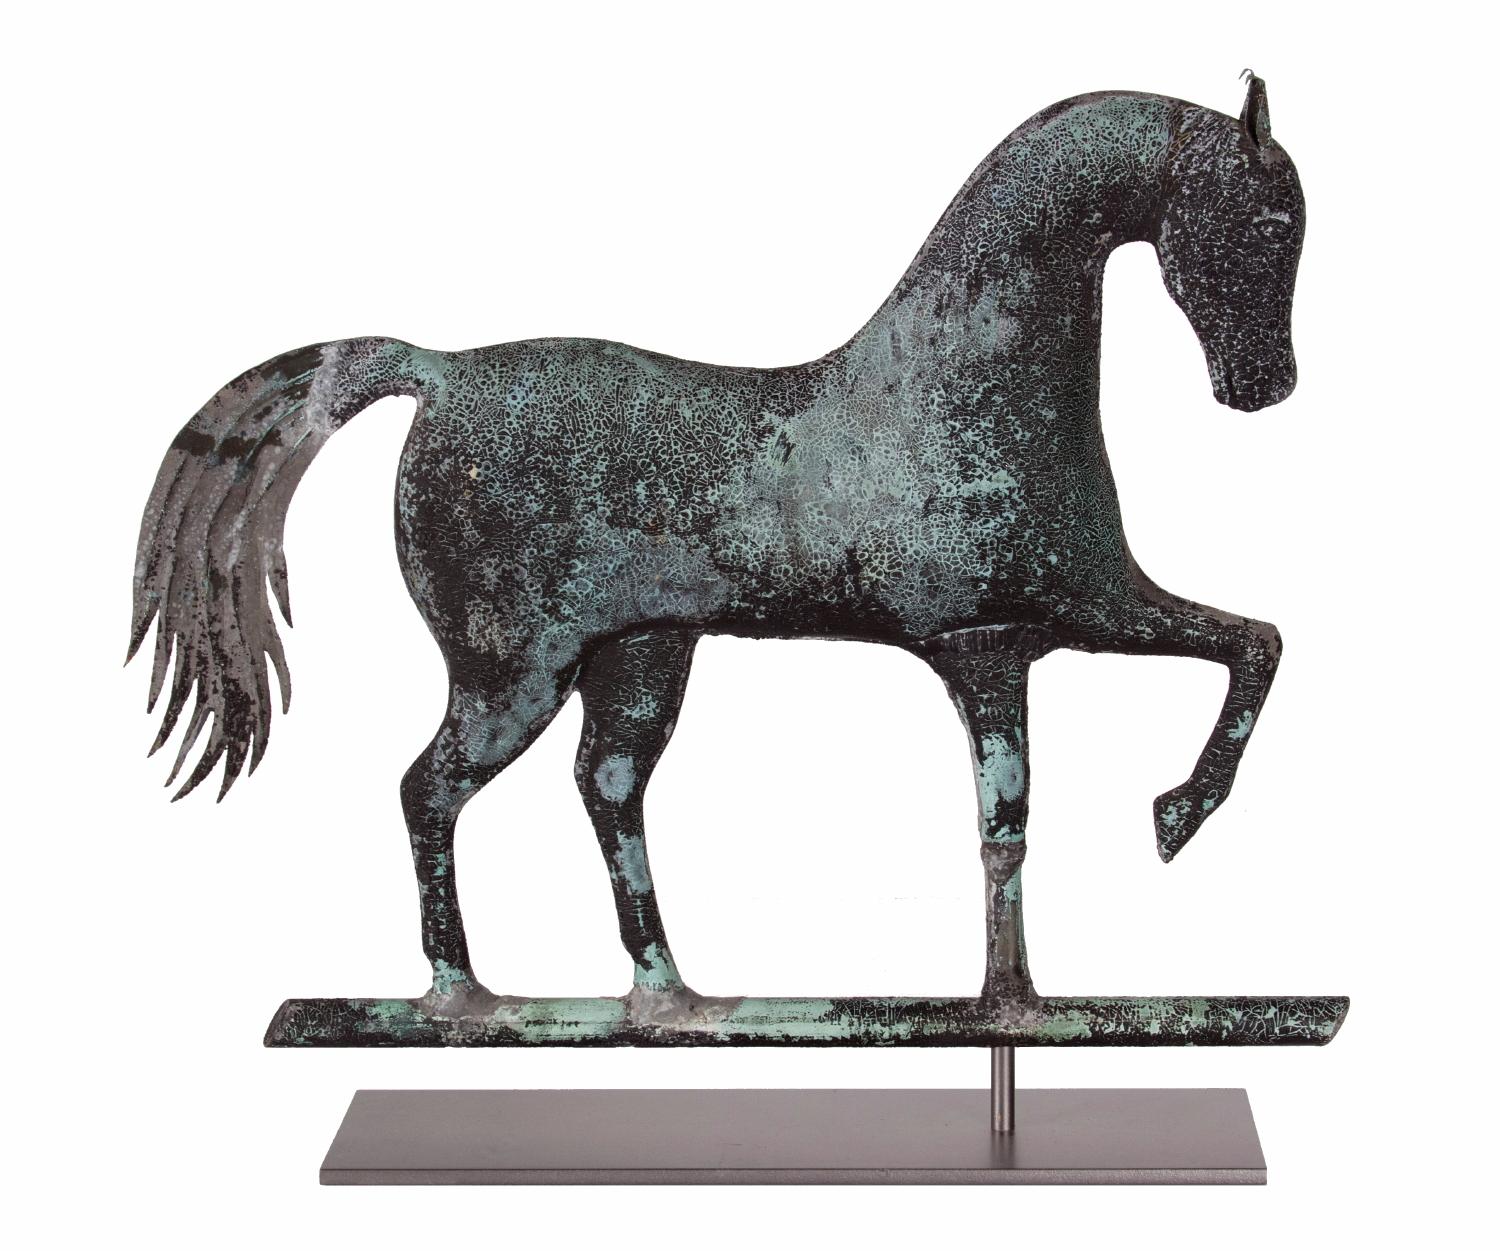 Girouette en forme de cheval cabré, attribuée à Jewell & Co. Waltham, Massachusetts, CA 1860 :

Girouette en forme de cheval cabré par A.H. Jewell & Co, Waltham, MA. Fabriqué en cuivre moulé, avec une tête en zinc moulé, des oreilles en cuivre